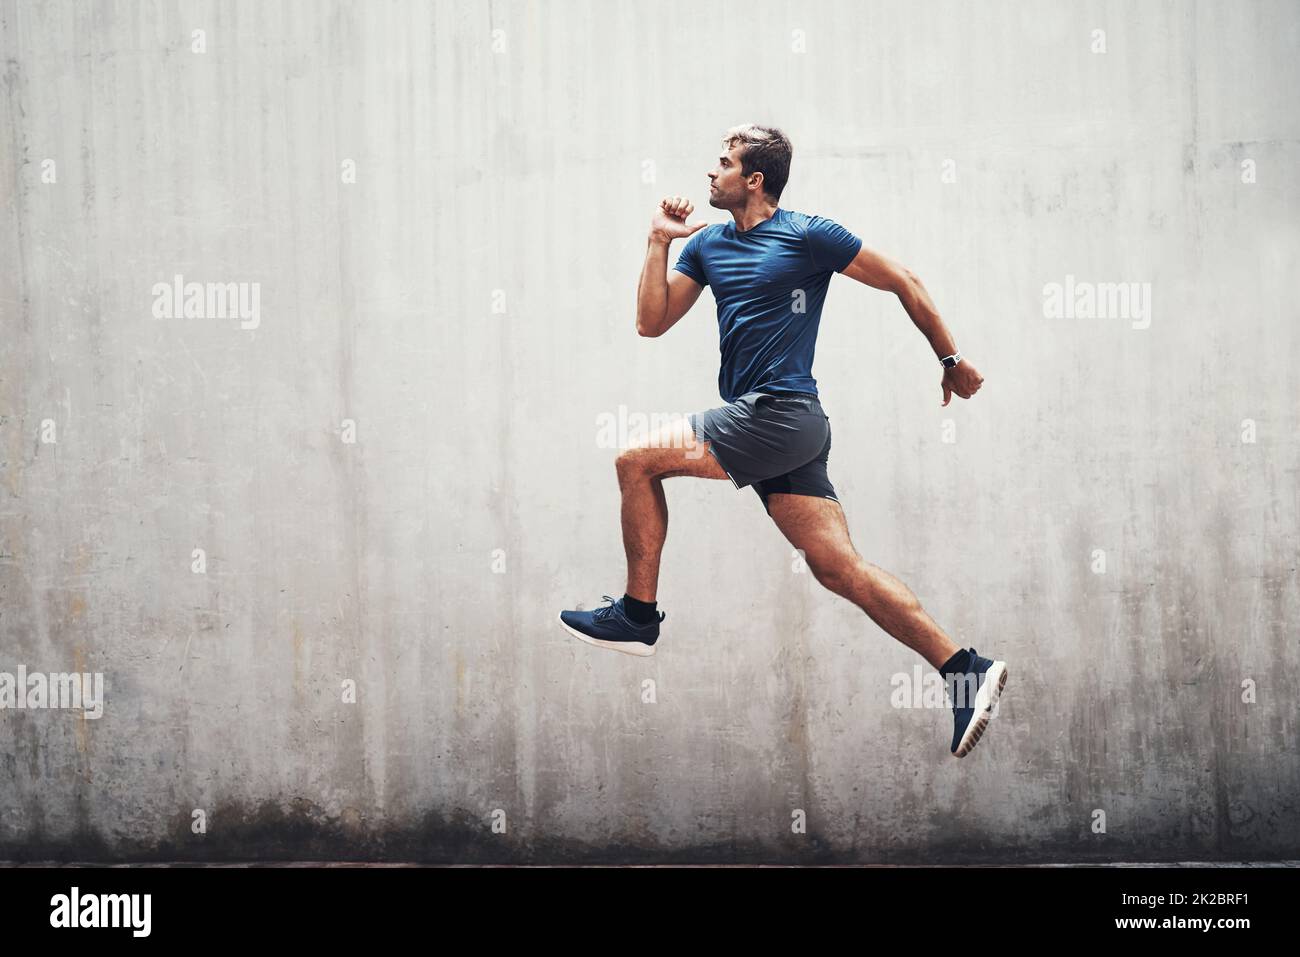 Halten Sie die Energie hoch. Aufnahme eines sportlichen jungen Mannes, der draußen gegen eine graue Wand läuft. Stockfoto